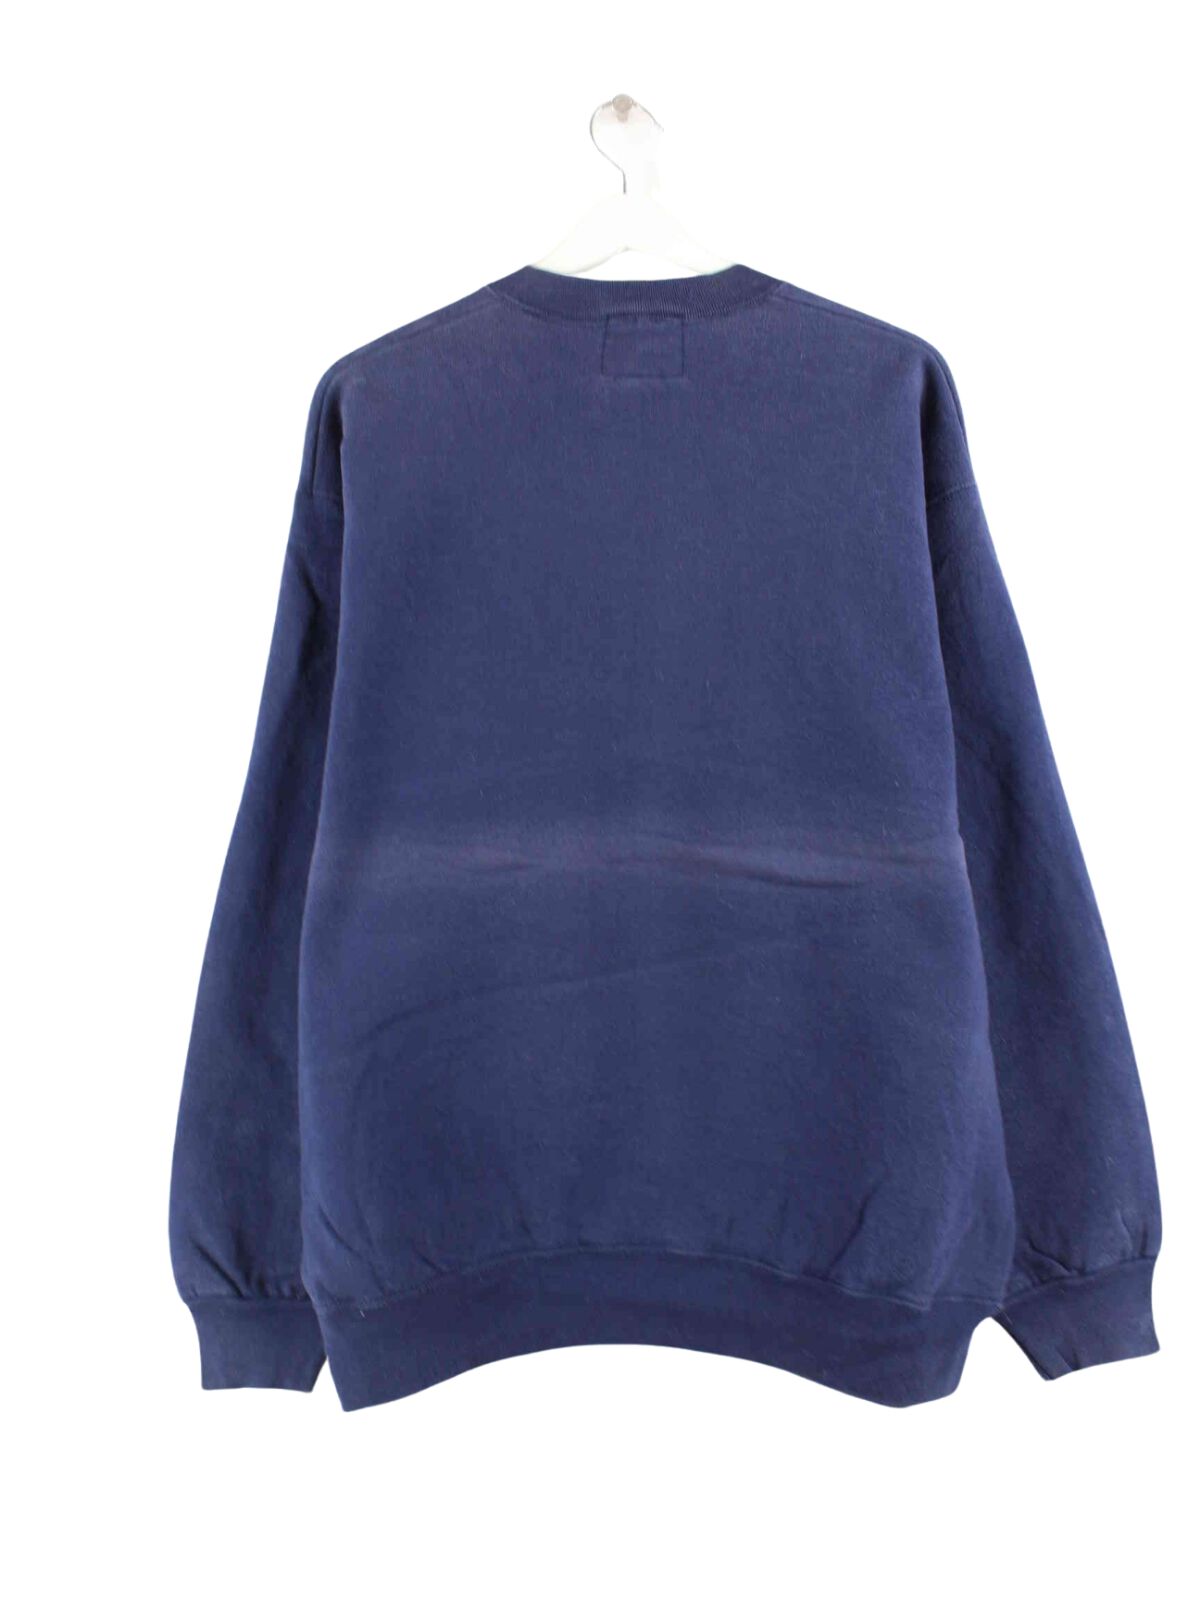 Camp David 80s Vintage Embroidered Sweater Blau L (back image)